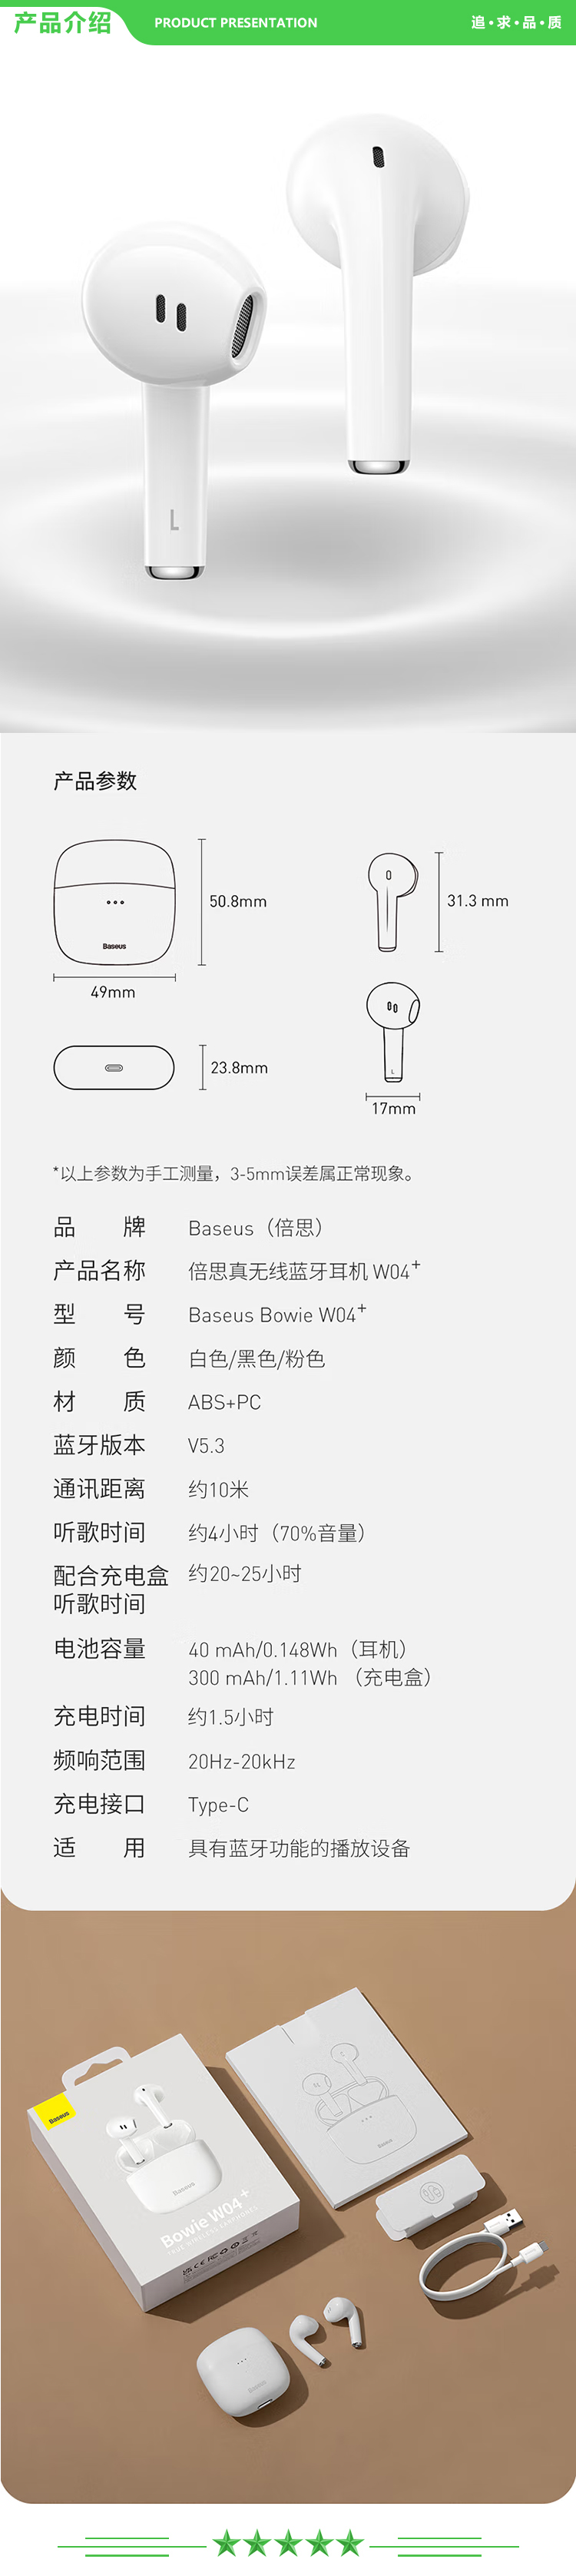 倍思 Baseus W04+ 白色 真无线蓝牙耳机半入耳式运动音乐吃鸡游戏降噪低延迟跑步耳机Air.jpg